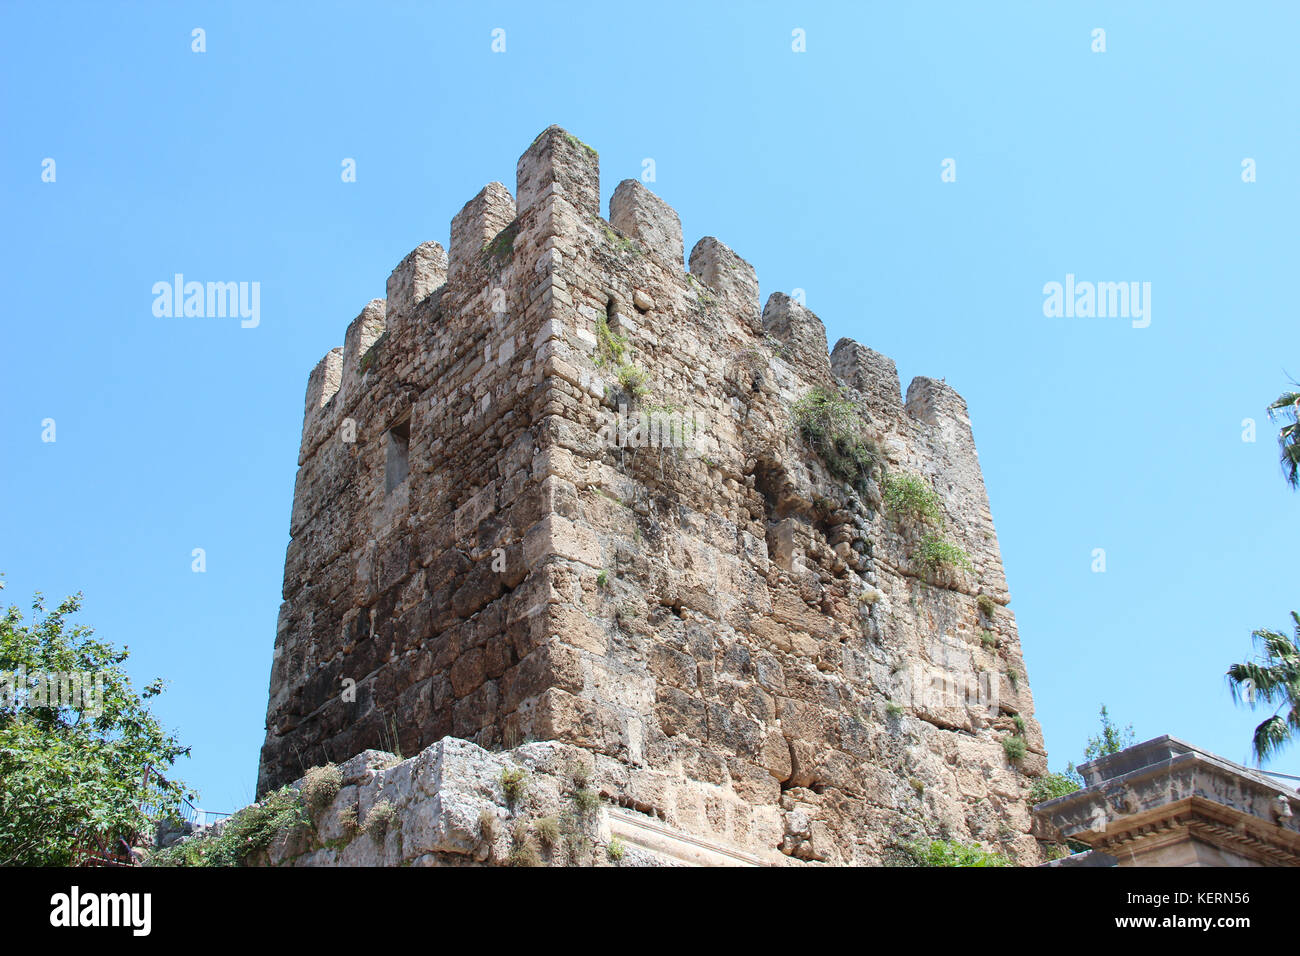 La antigua torre almenada en la antigua puerta de Adriano, en Antalya, Turquía. En el fondo de cielo azul y verde de los árboles. Foto de stock